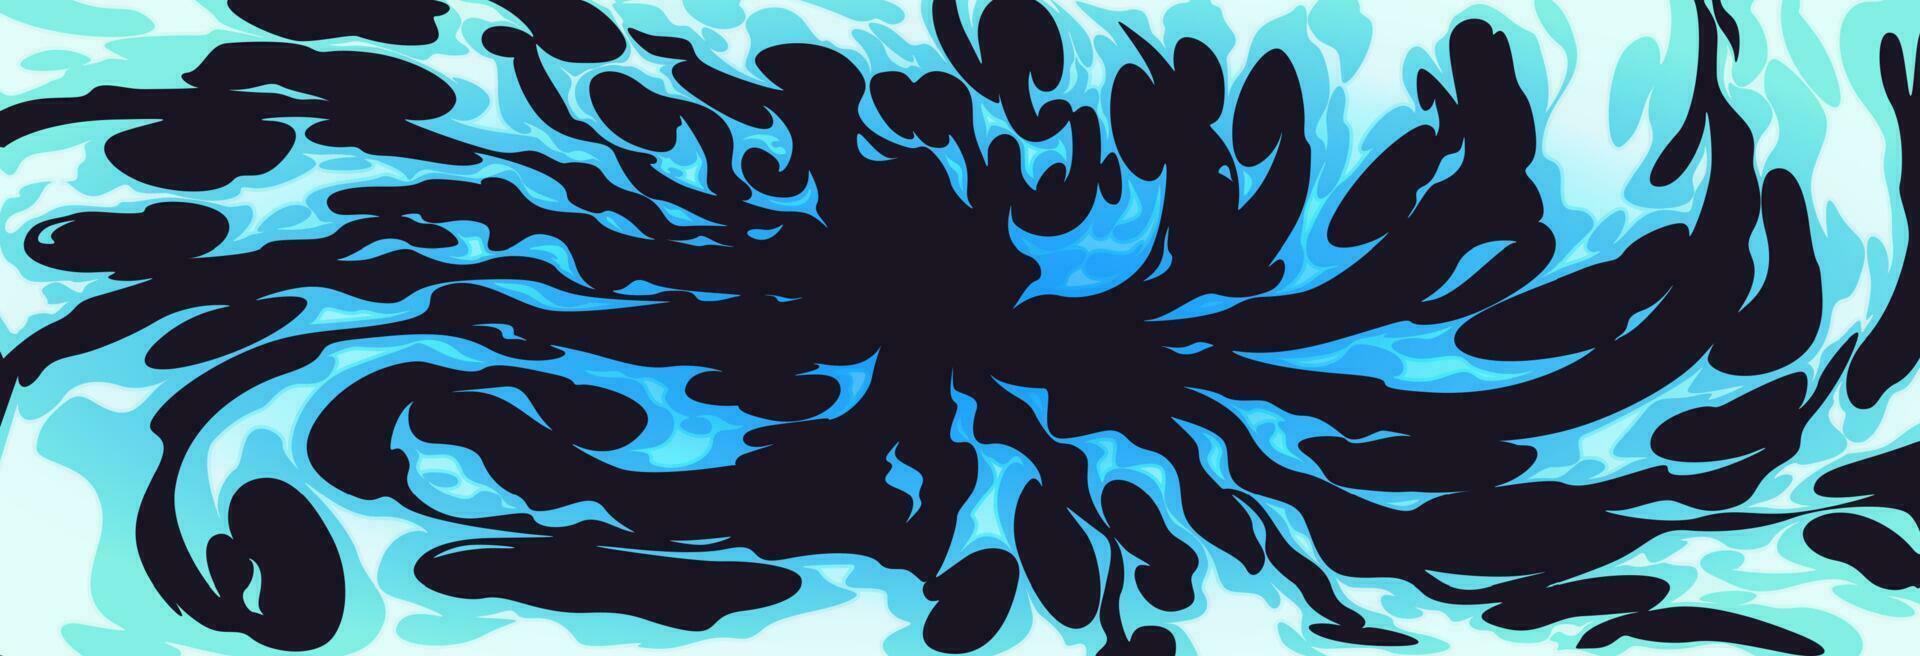 blu fuoco effetto, cartone animato acqua i fumetti sfondo vettore